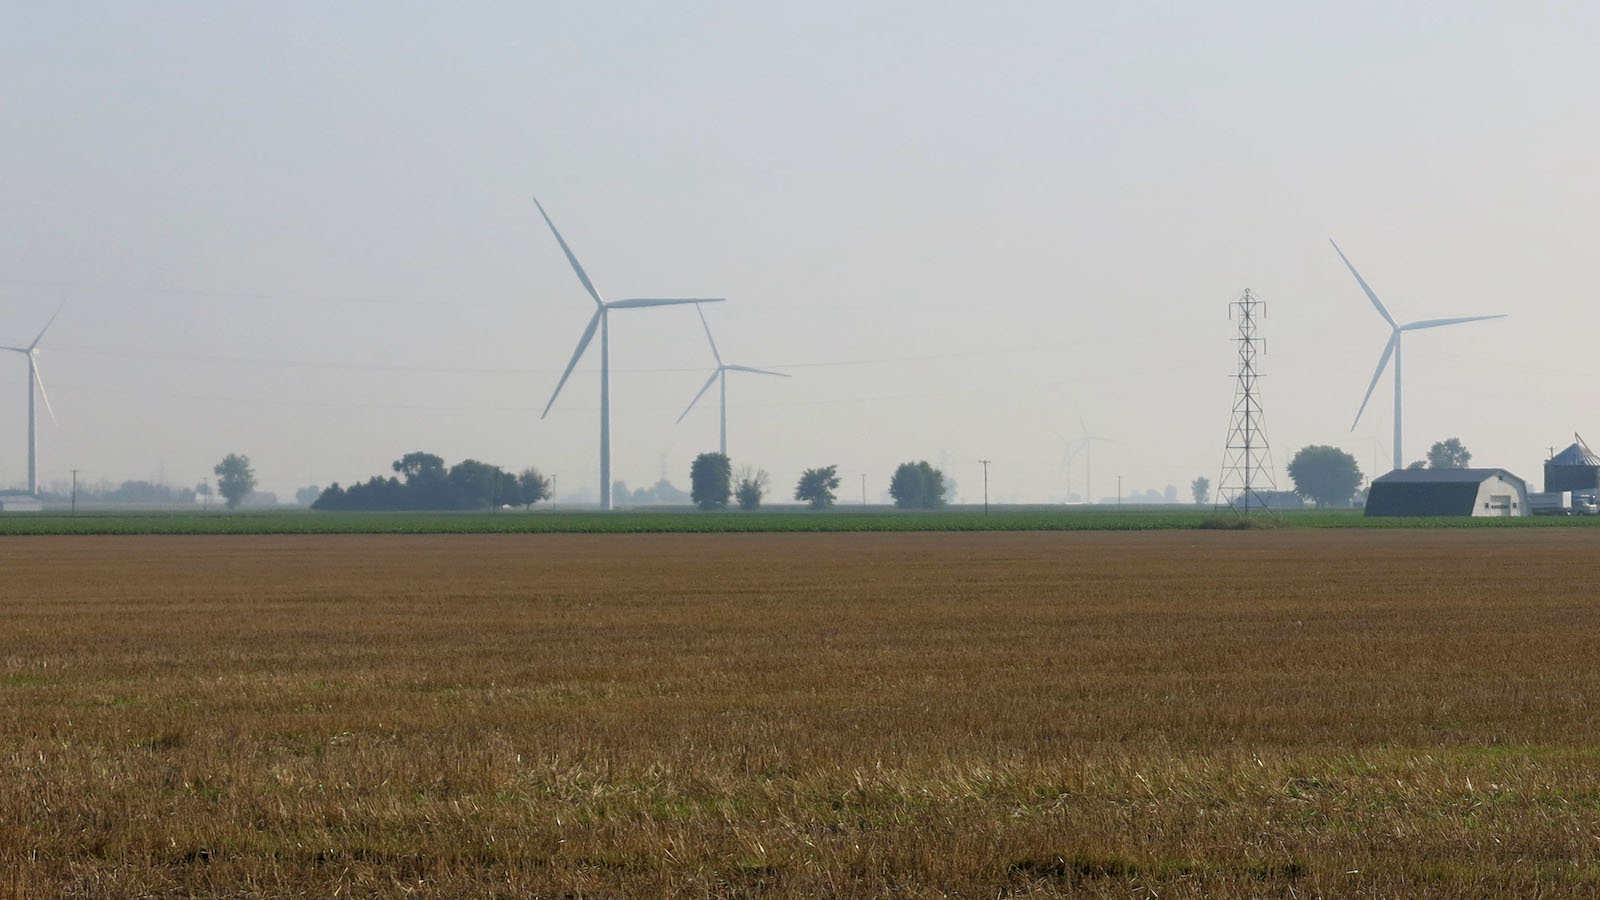 Wind turbines on a farm field.